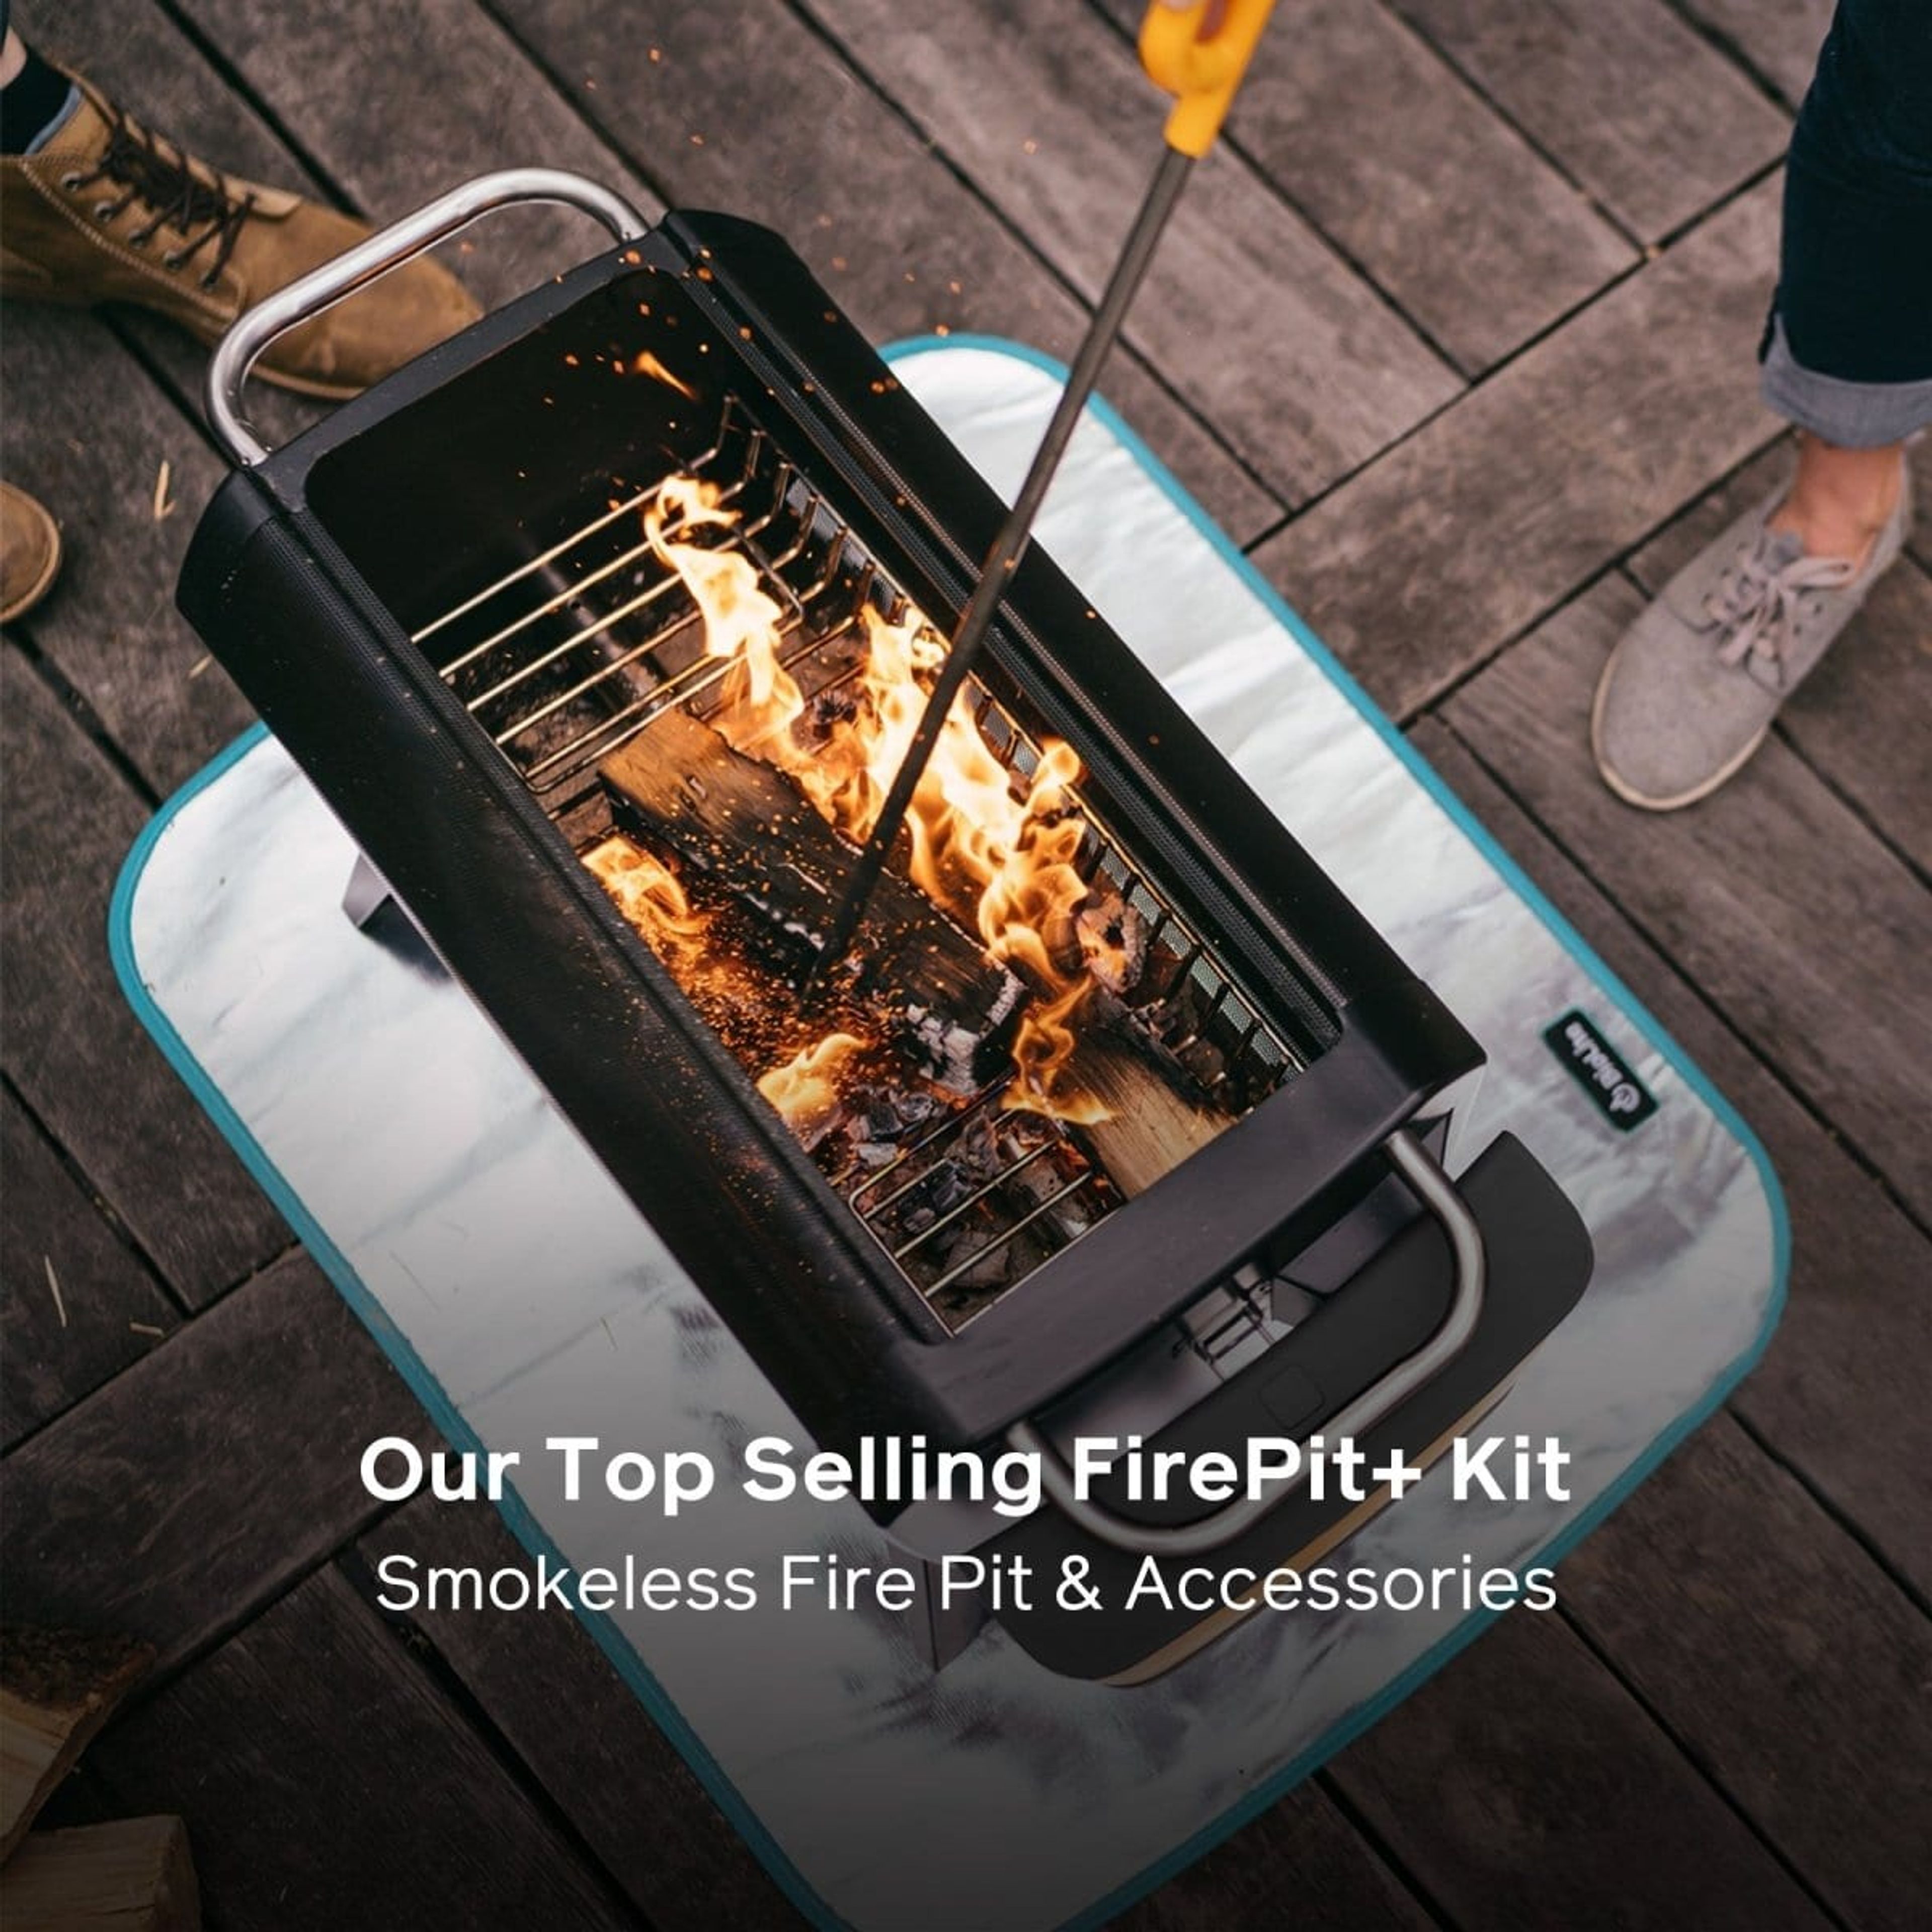 FirePit Essentials Kit